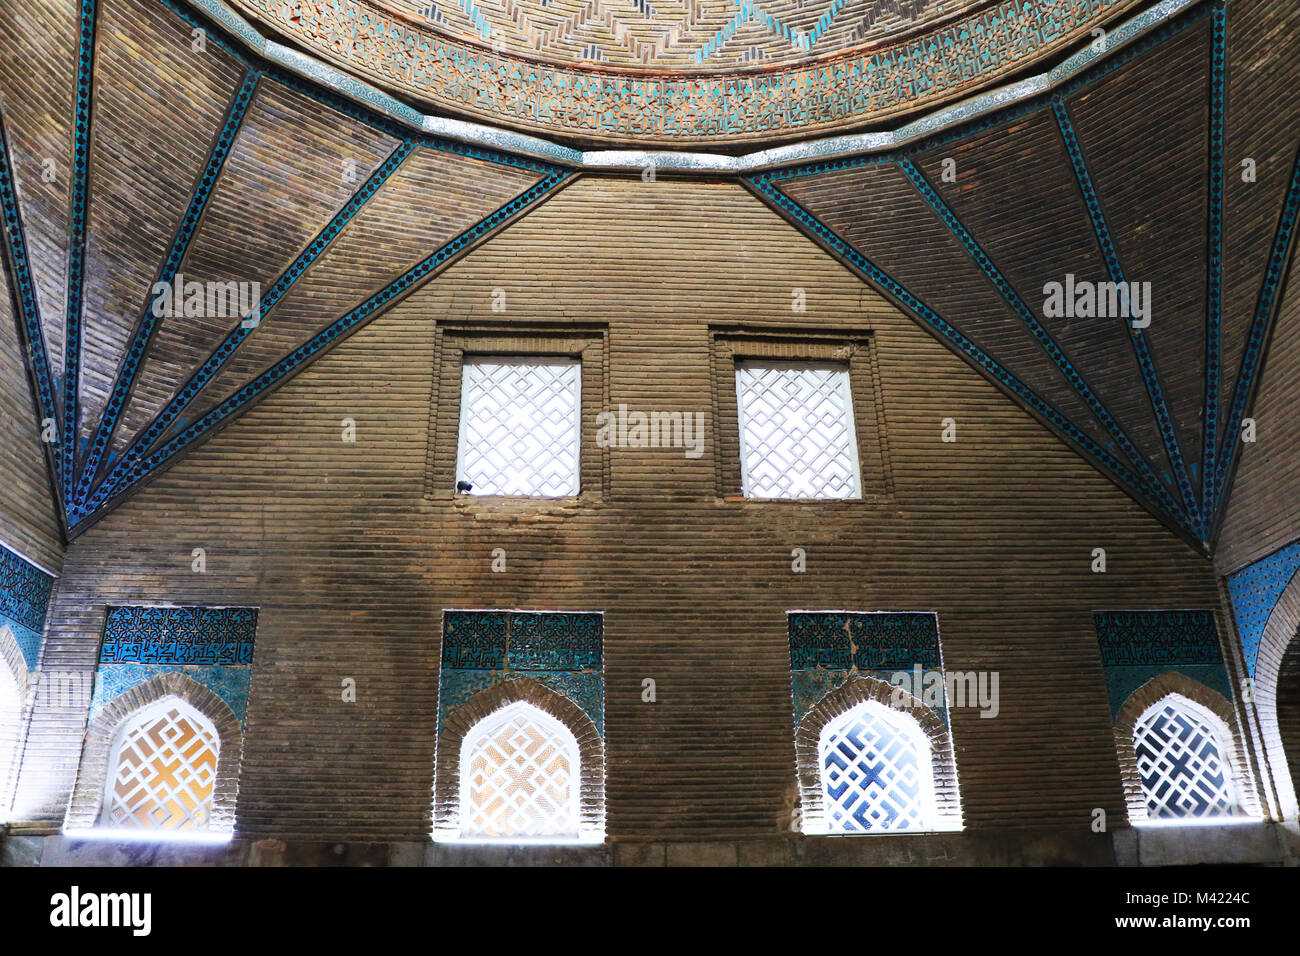 Piscine de l'Ince Minareli Medrese (Minaret élancé Madrasah) appartiennent au 13e siècle, à Konya, Turquie. Banque D'Images